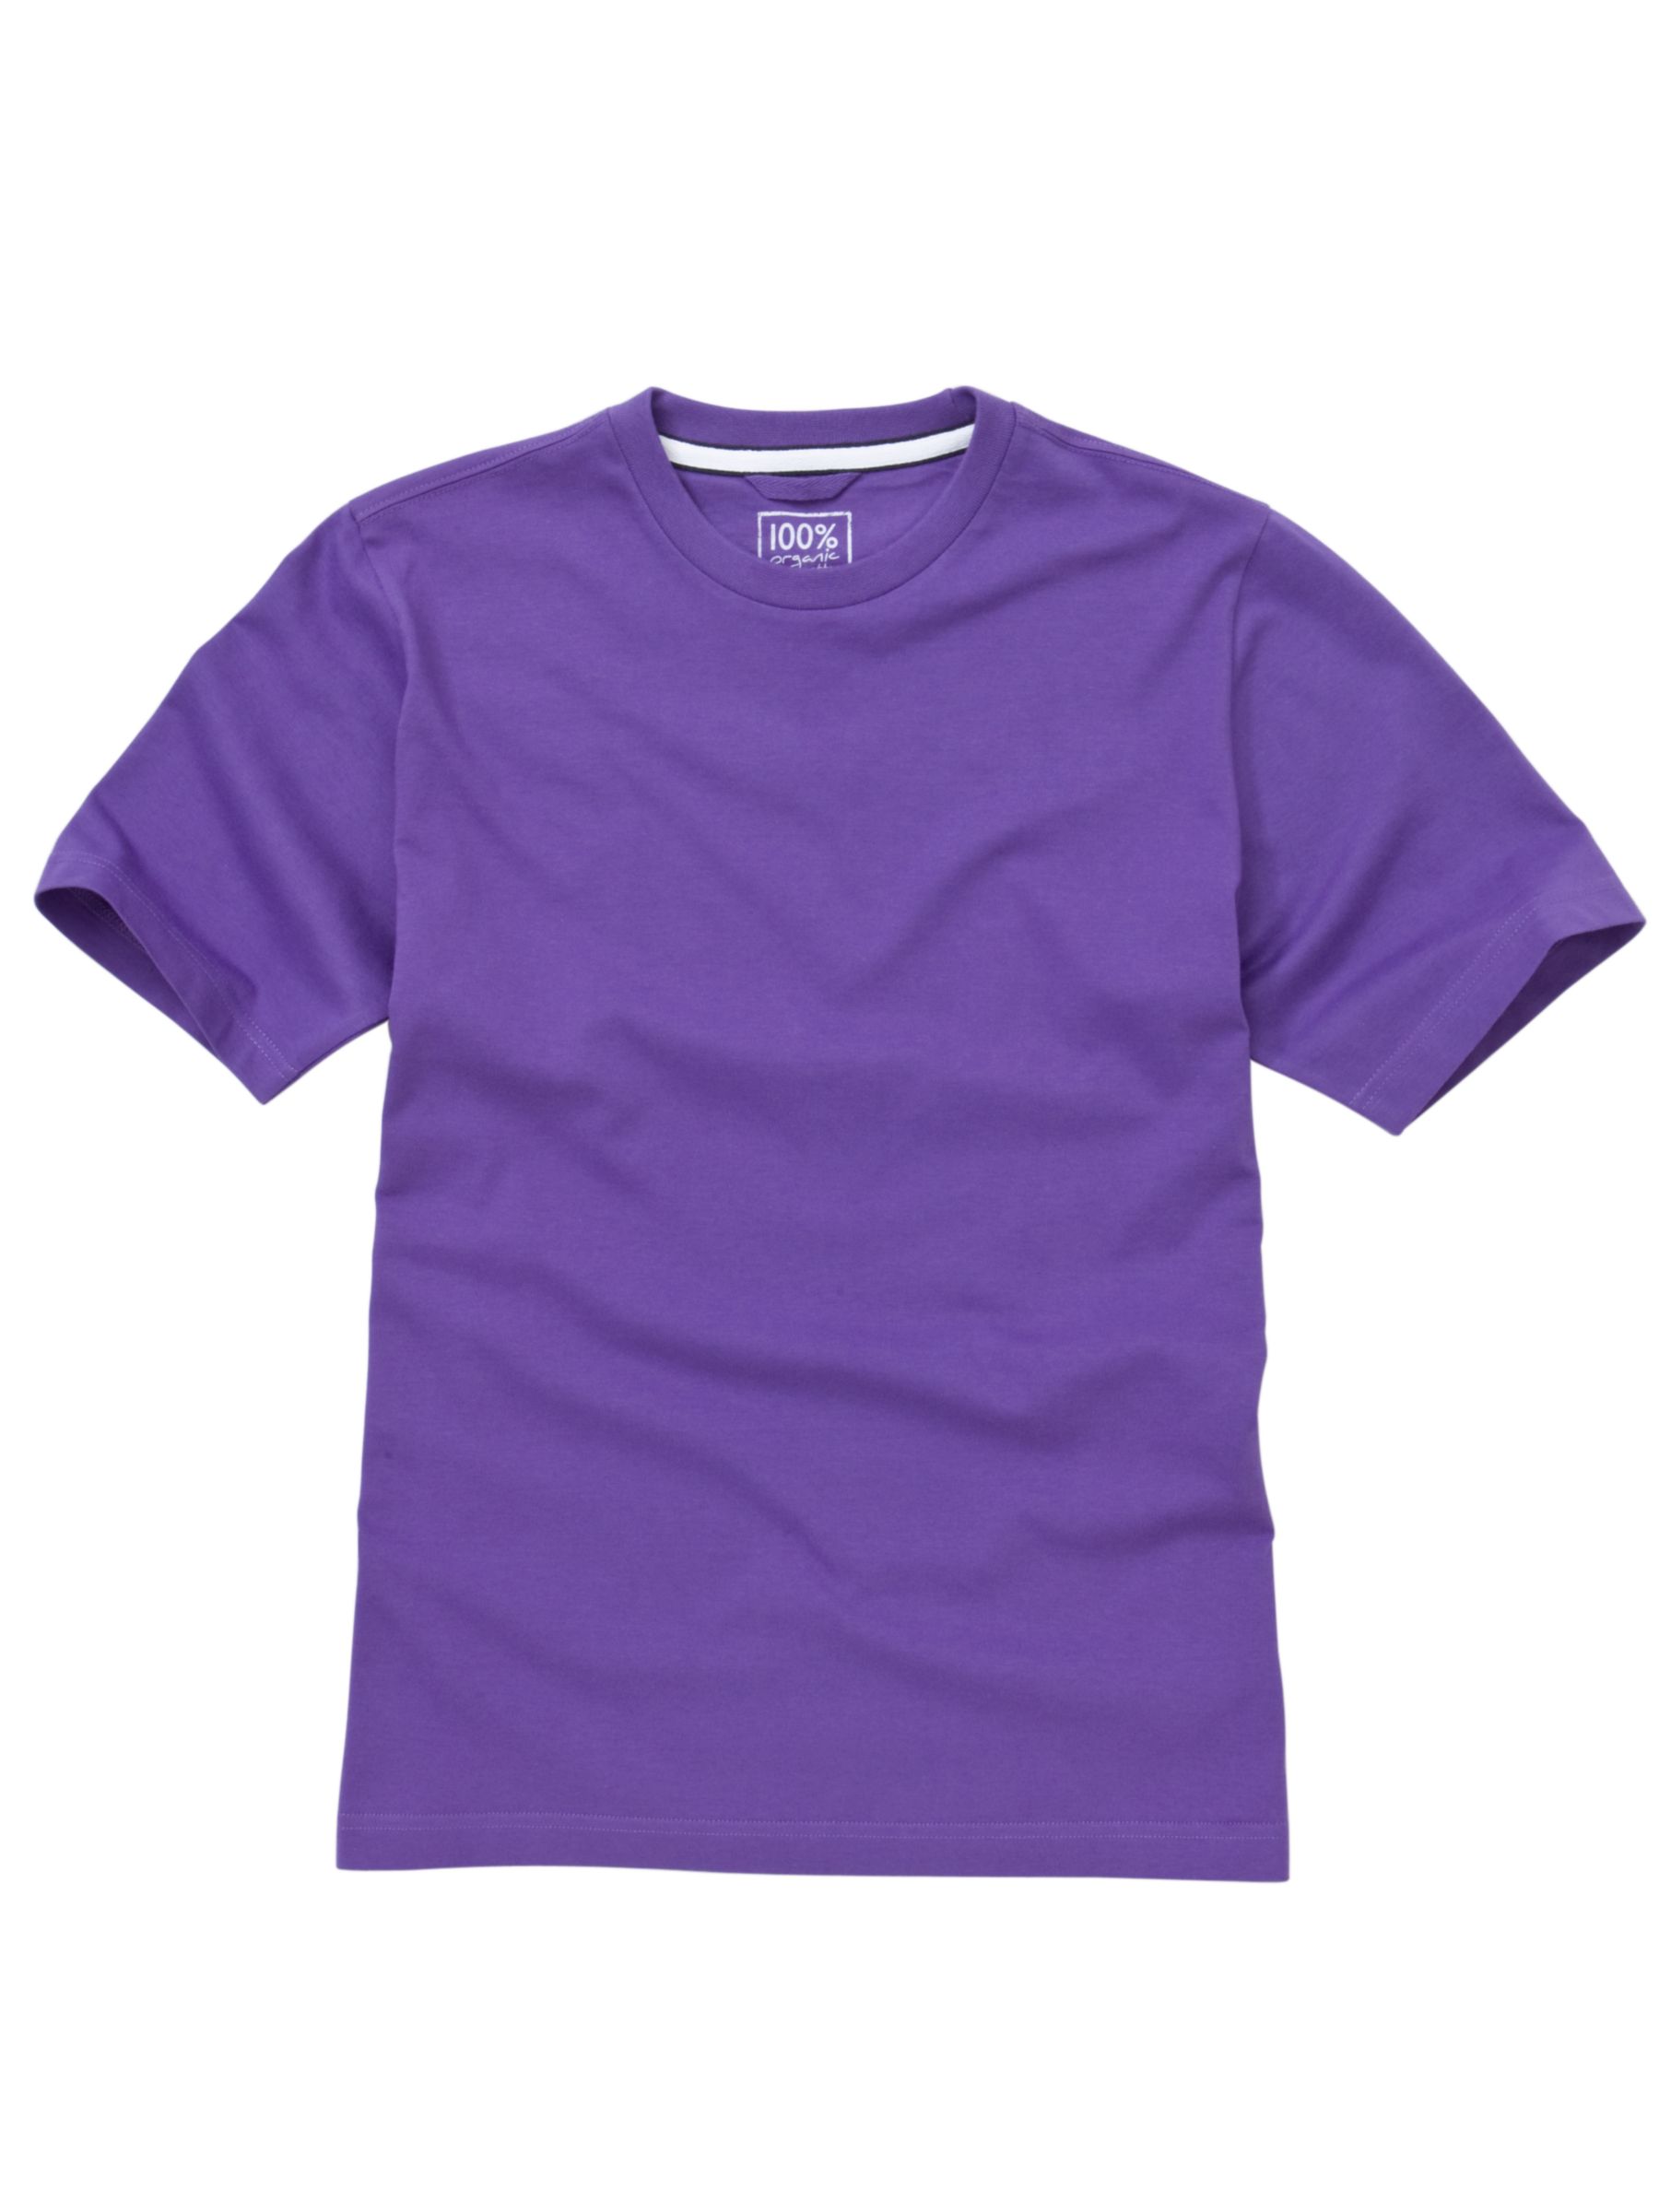 Organic Cotton T-Shirt, Lilac